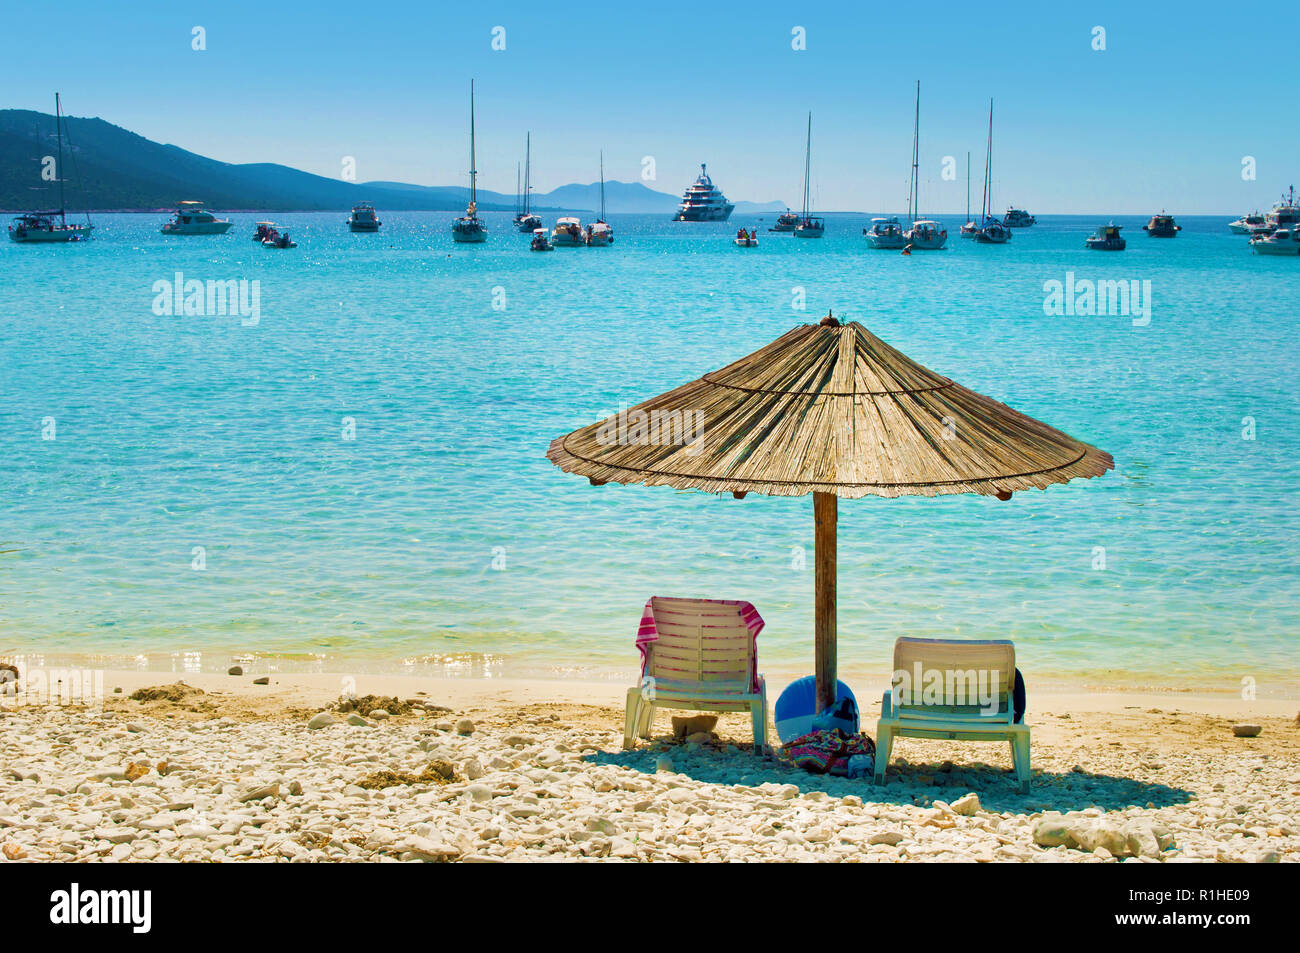 Uno giallo paglierino con ombrellone e due sedie a sdraio sulla sabbia  ghiaiosa spiaggia. Molti yacht